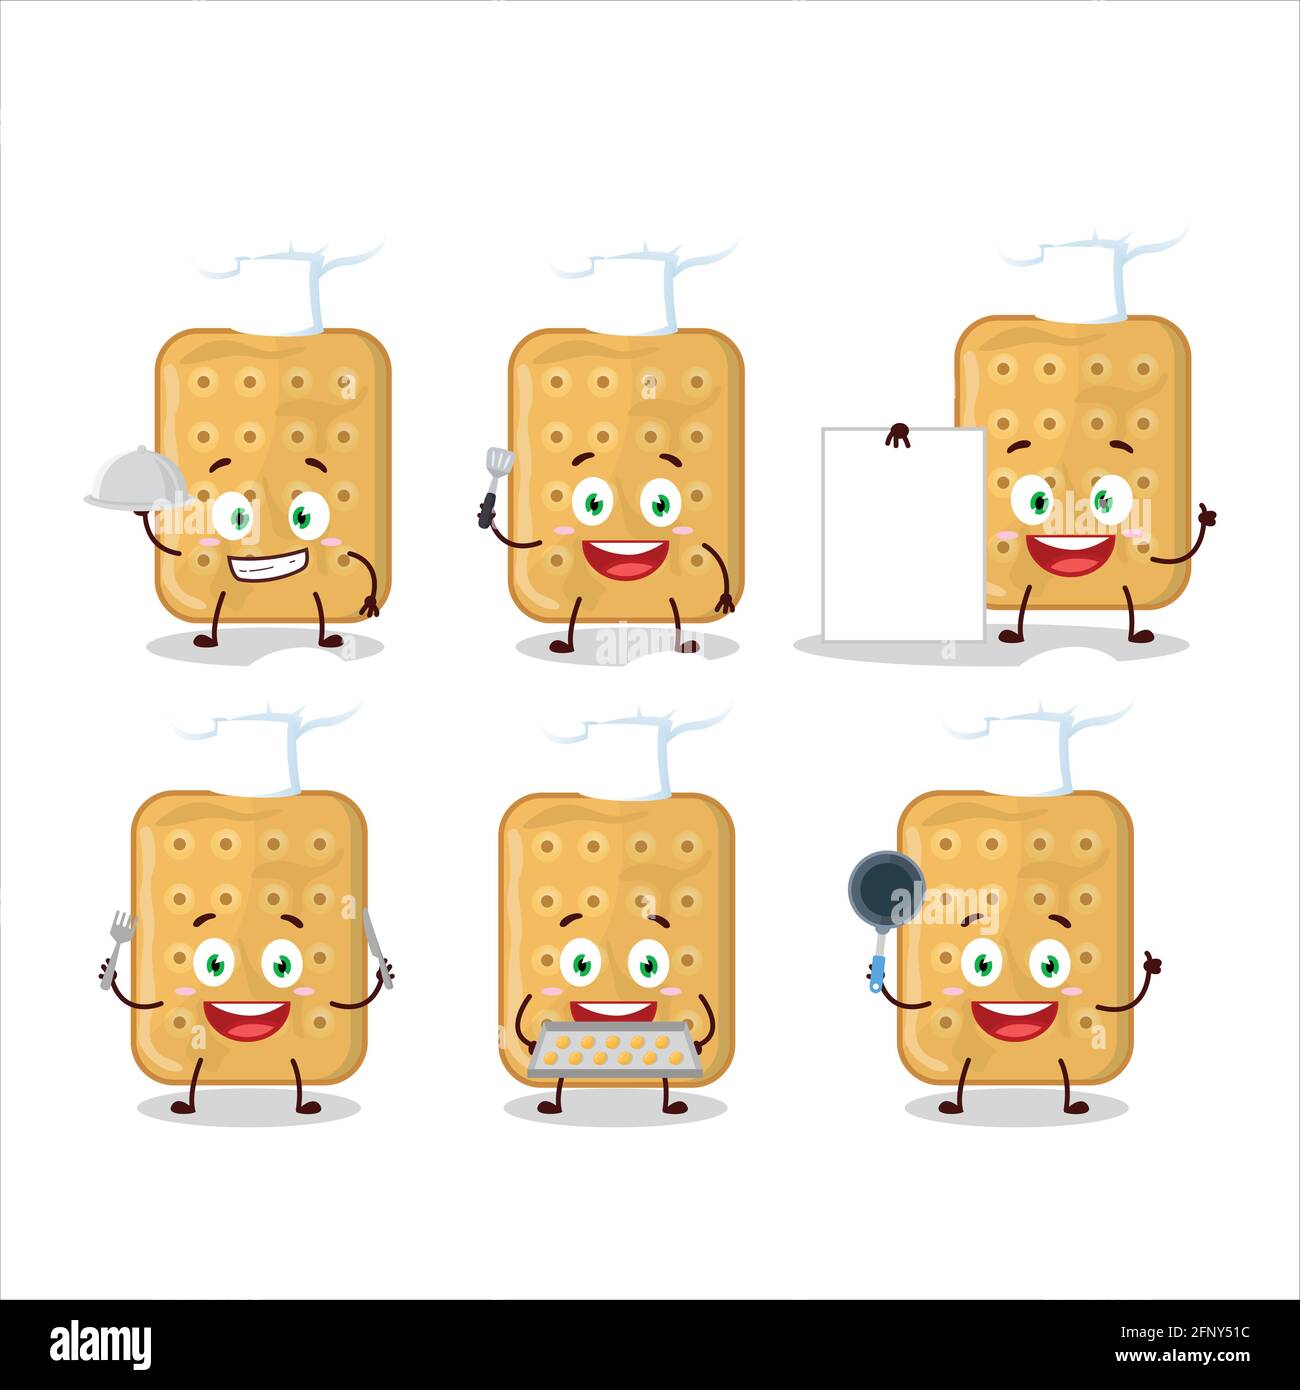 Cartoon-Charakter von Keks mit verschiedenen Chef Emoticons. Vektorgrafik Stock Vektor